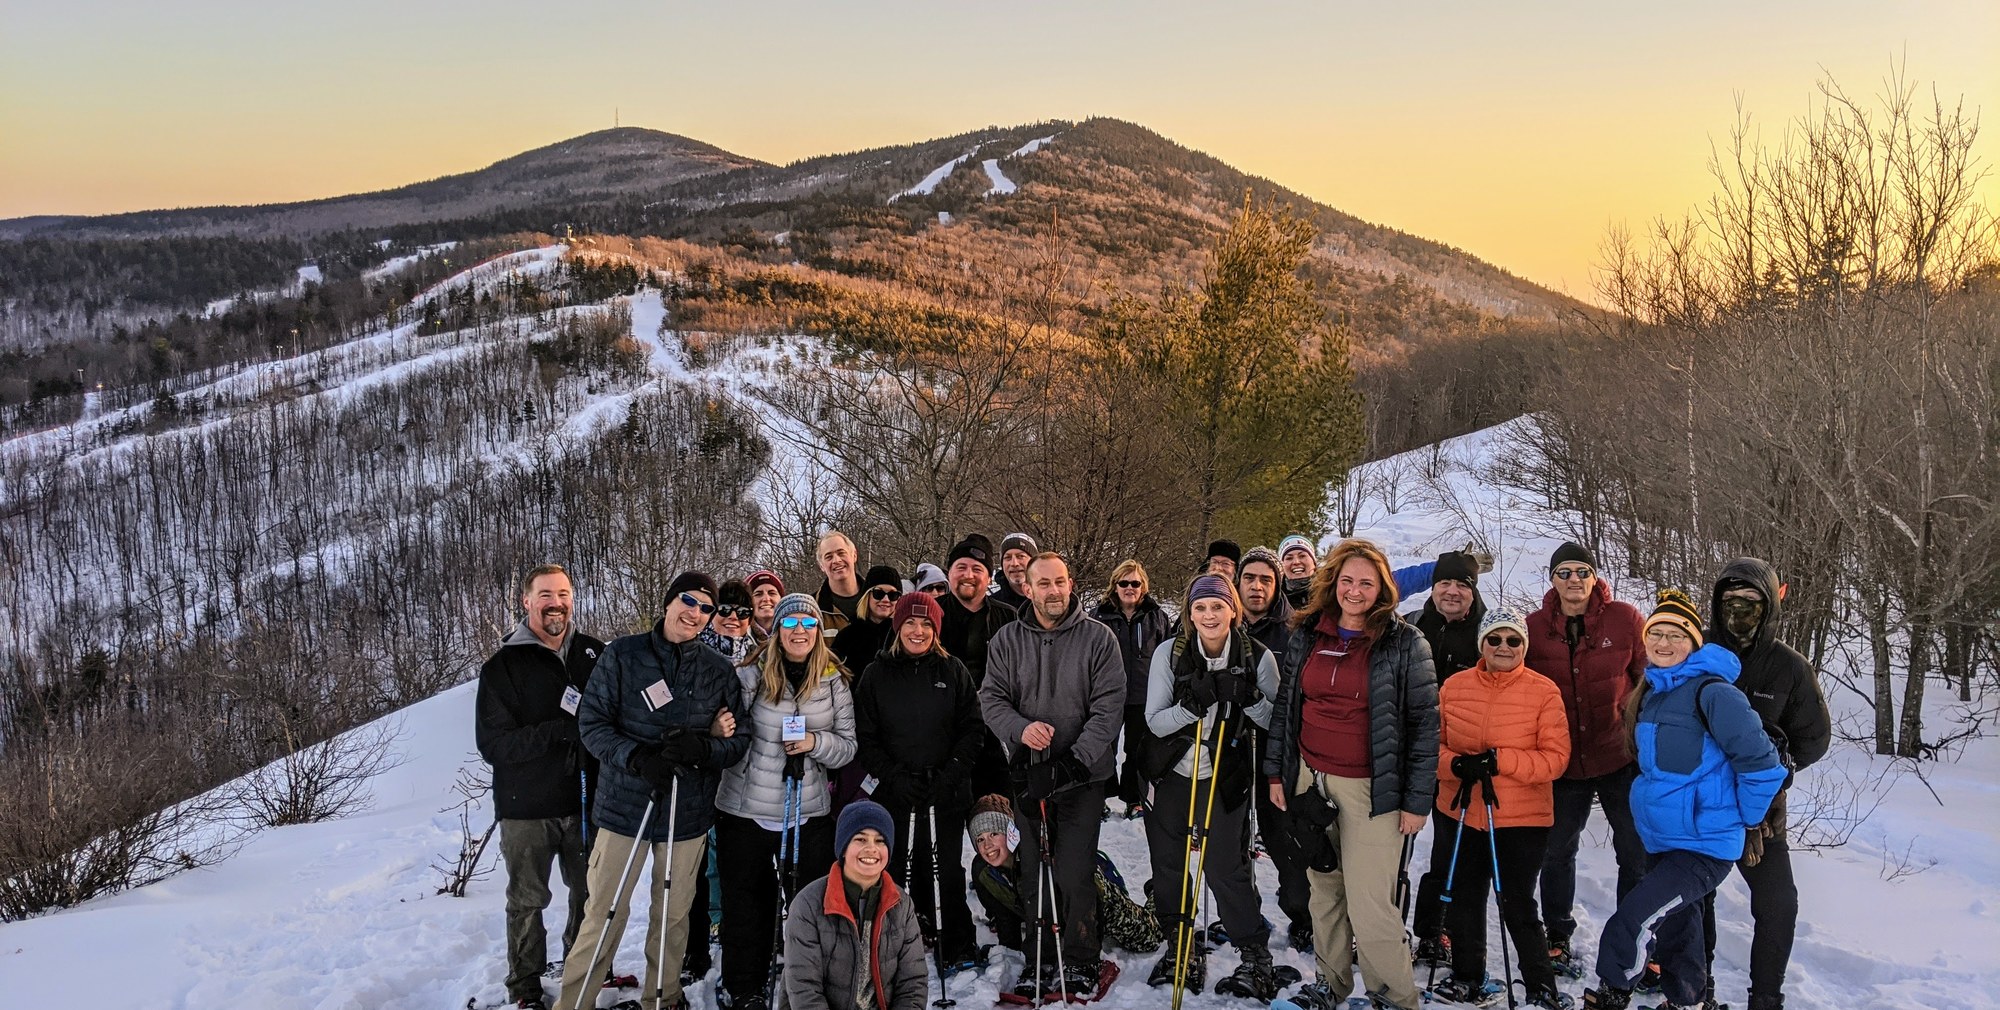 Snowshoe Ridge Tour at sunset